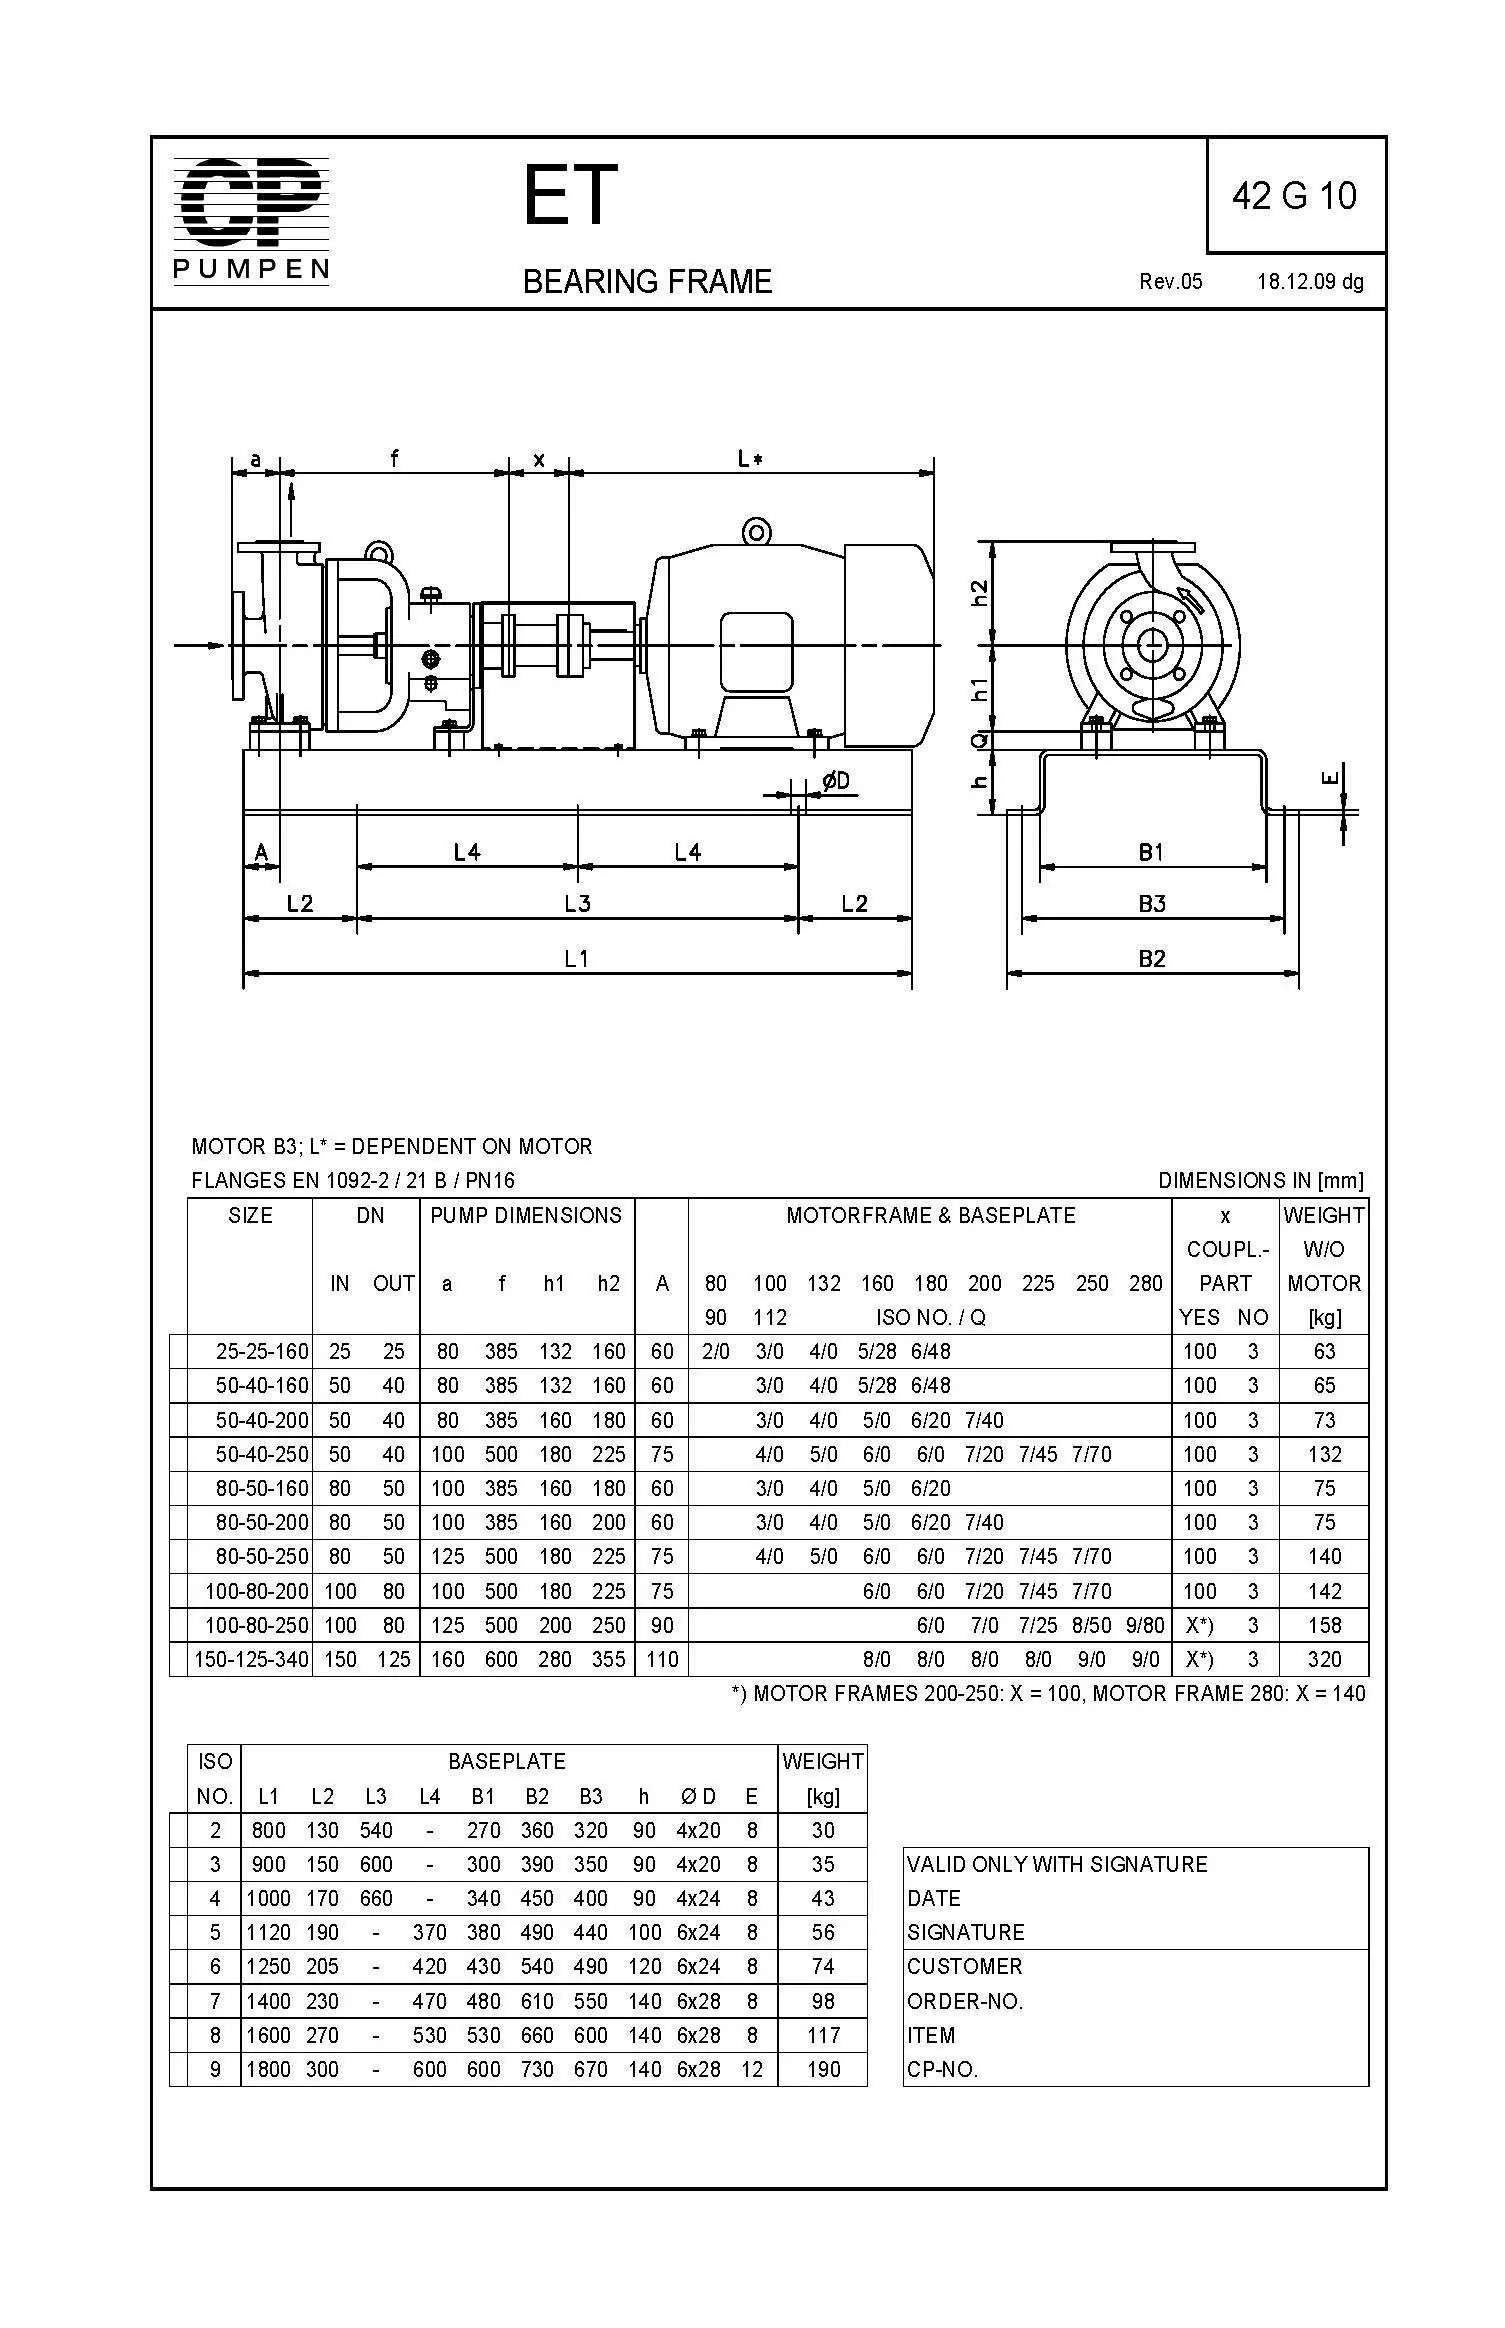 DimensionalDrawing ET Baseplate Motor 42G10 Rev05